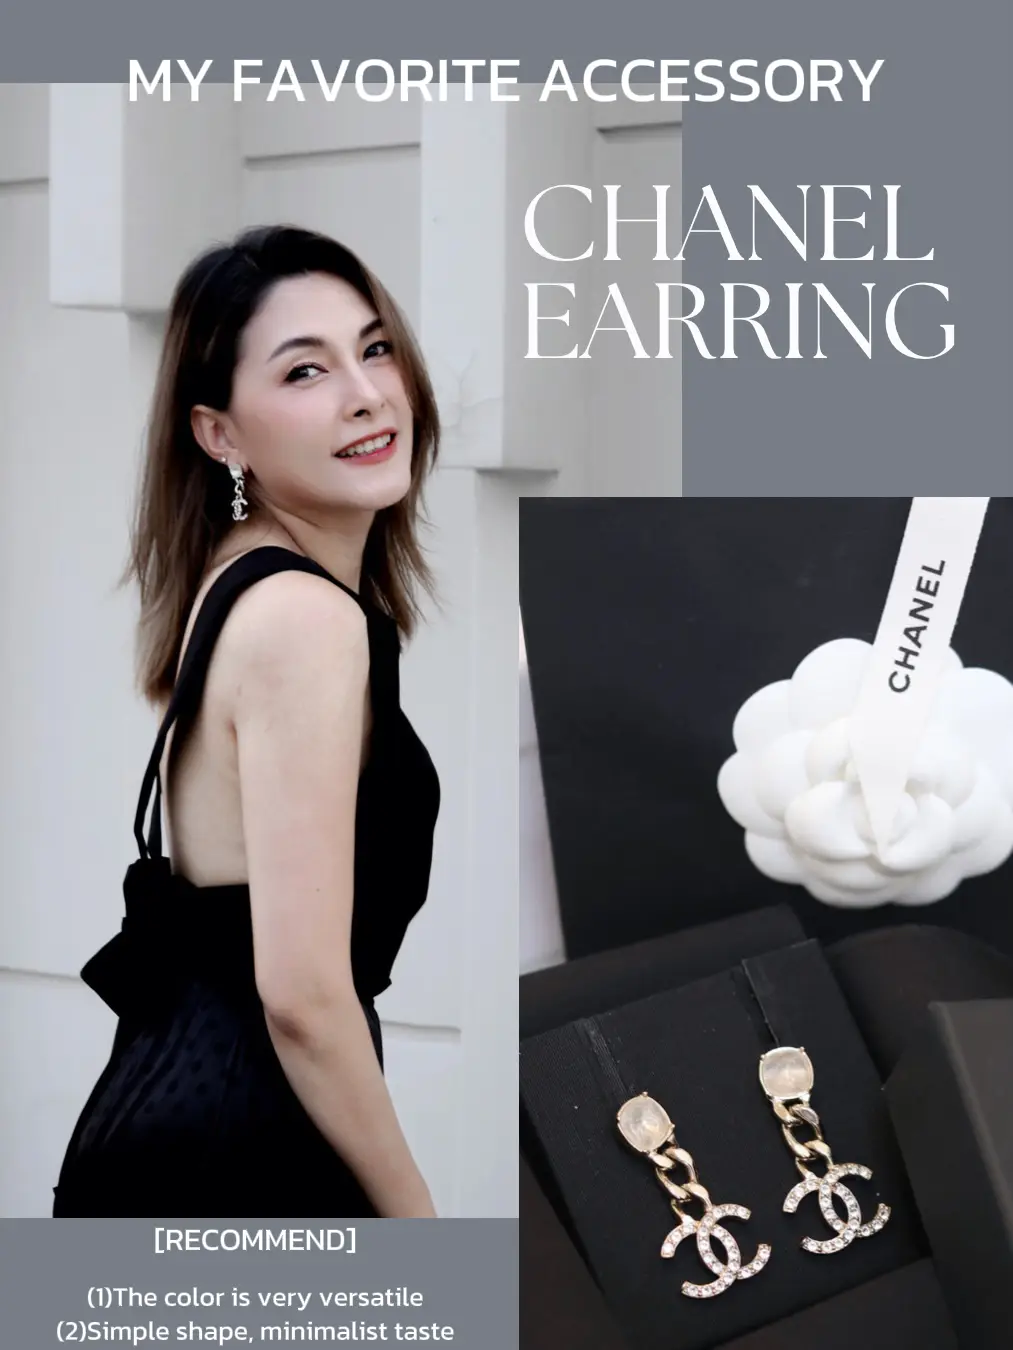 Flush to arrange. Chanel earring is cute., Gallery posted by  Jibjoycejibjib